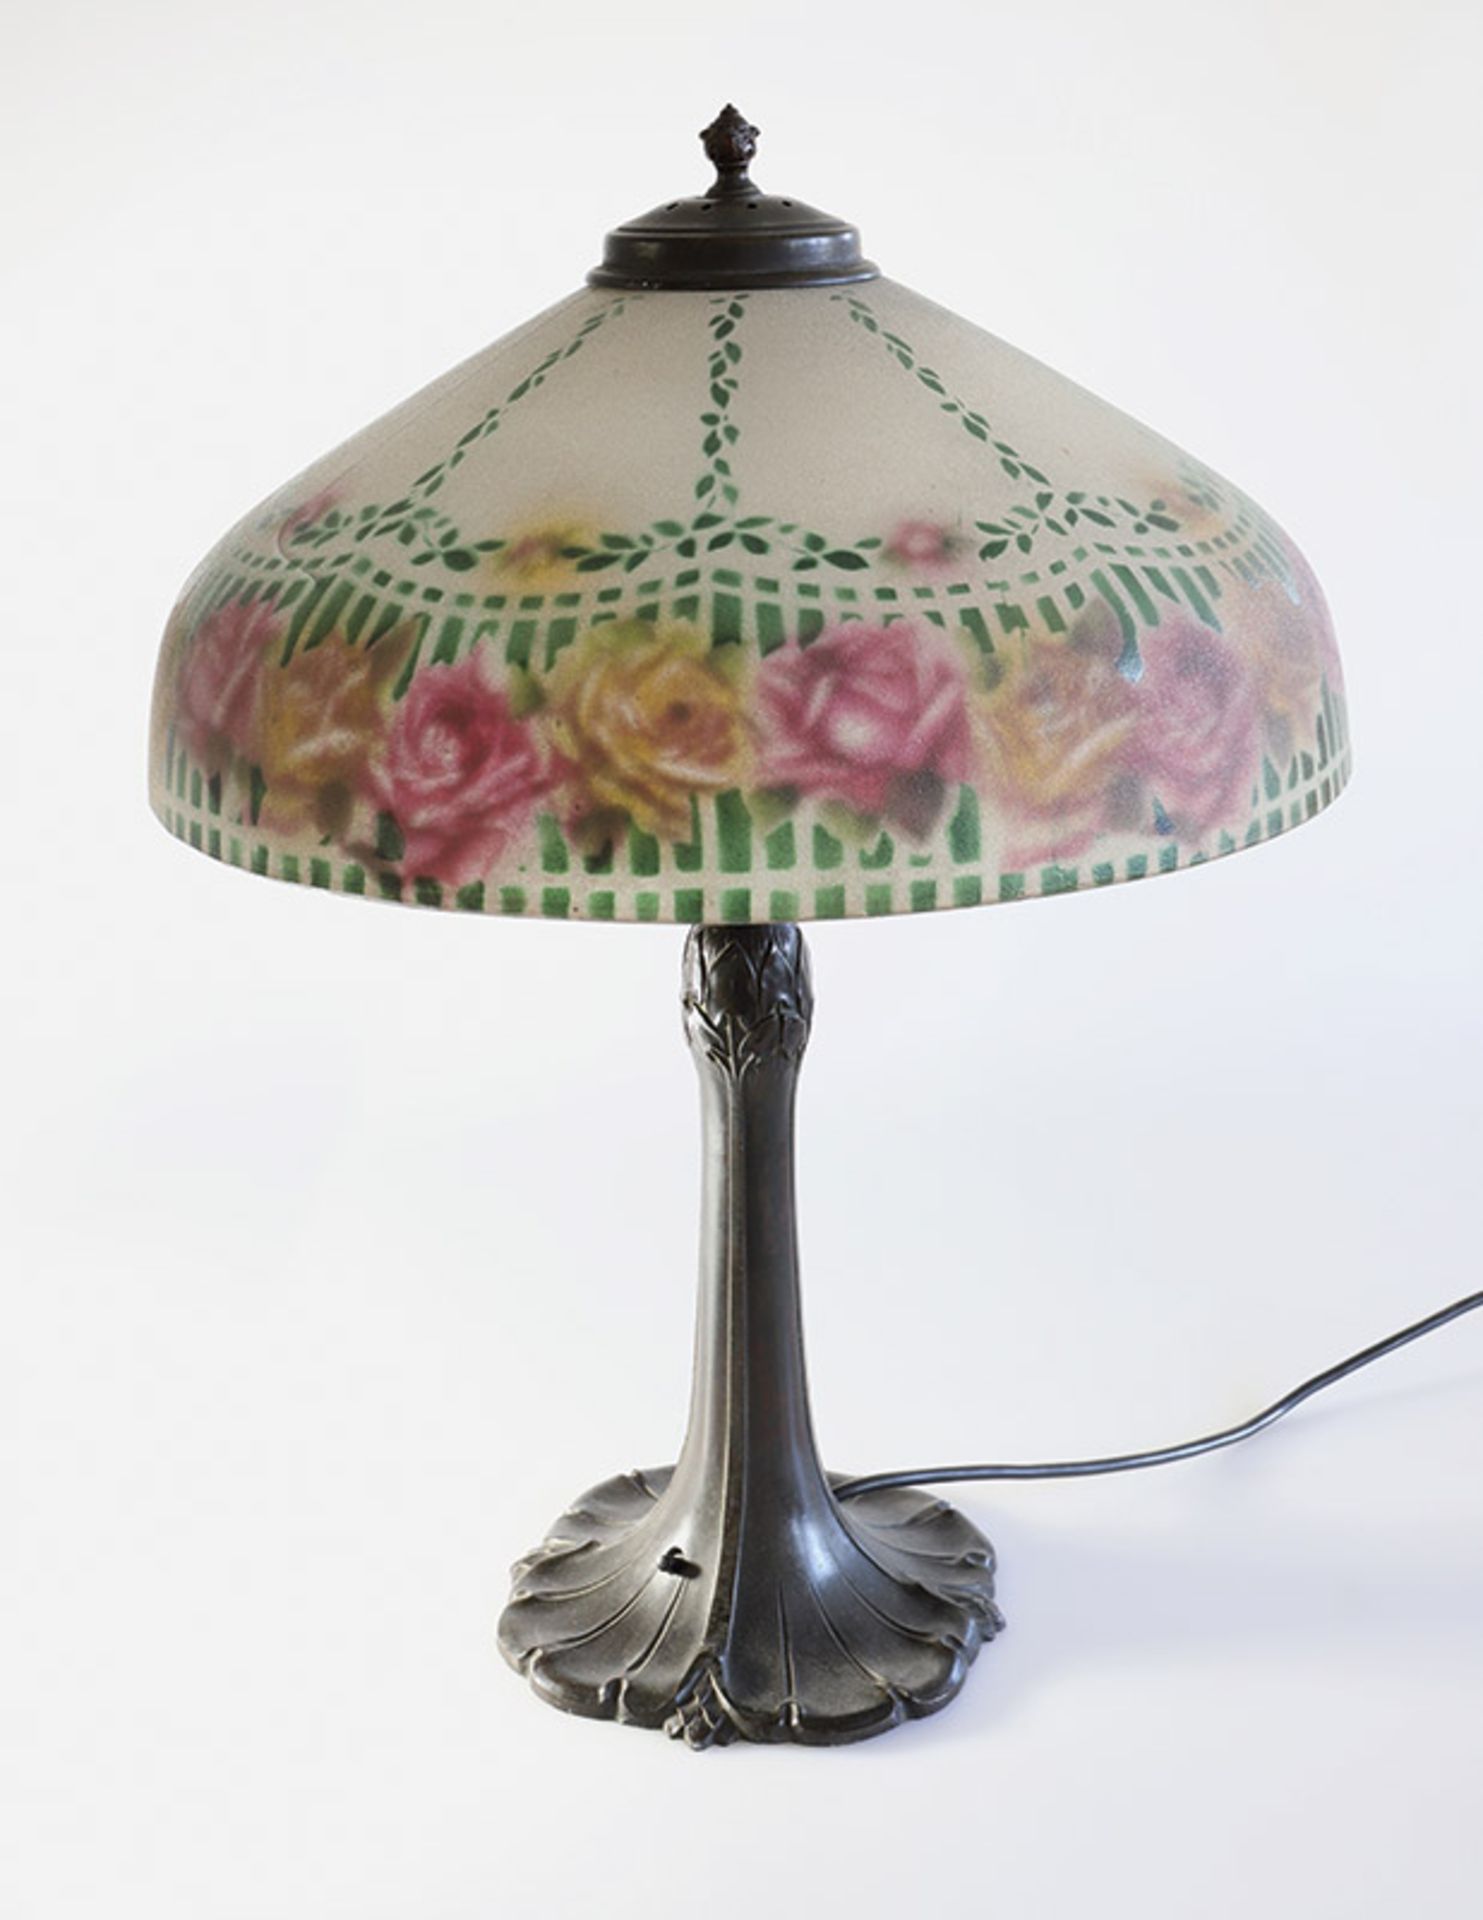 Jugendstil Lampeum 1915Metall, bronziert. Glasschirm mit strukturierter Oberfläche und polychromem